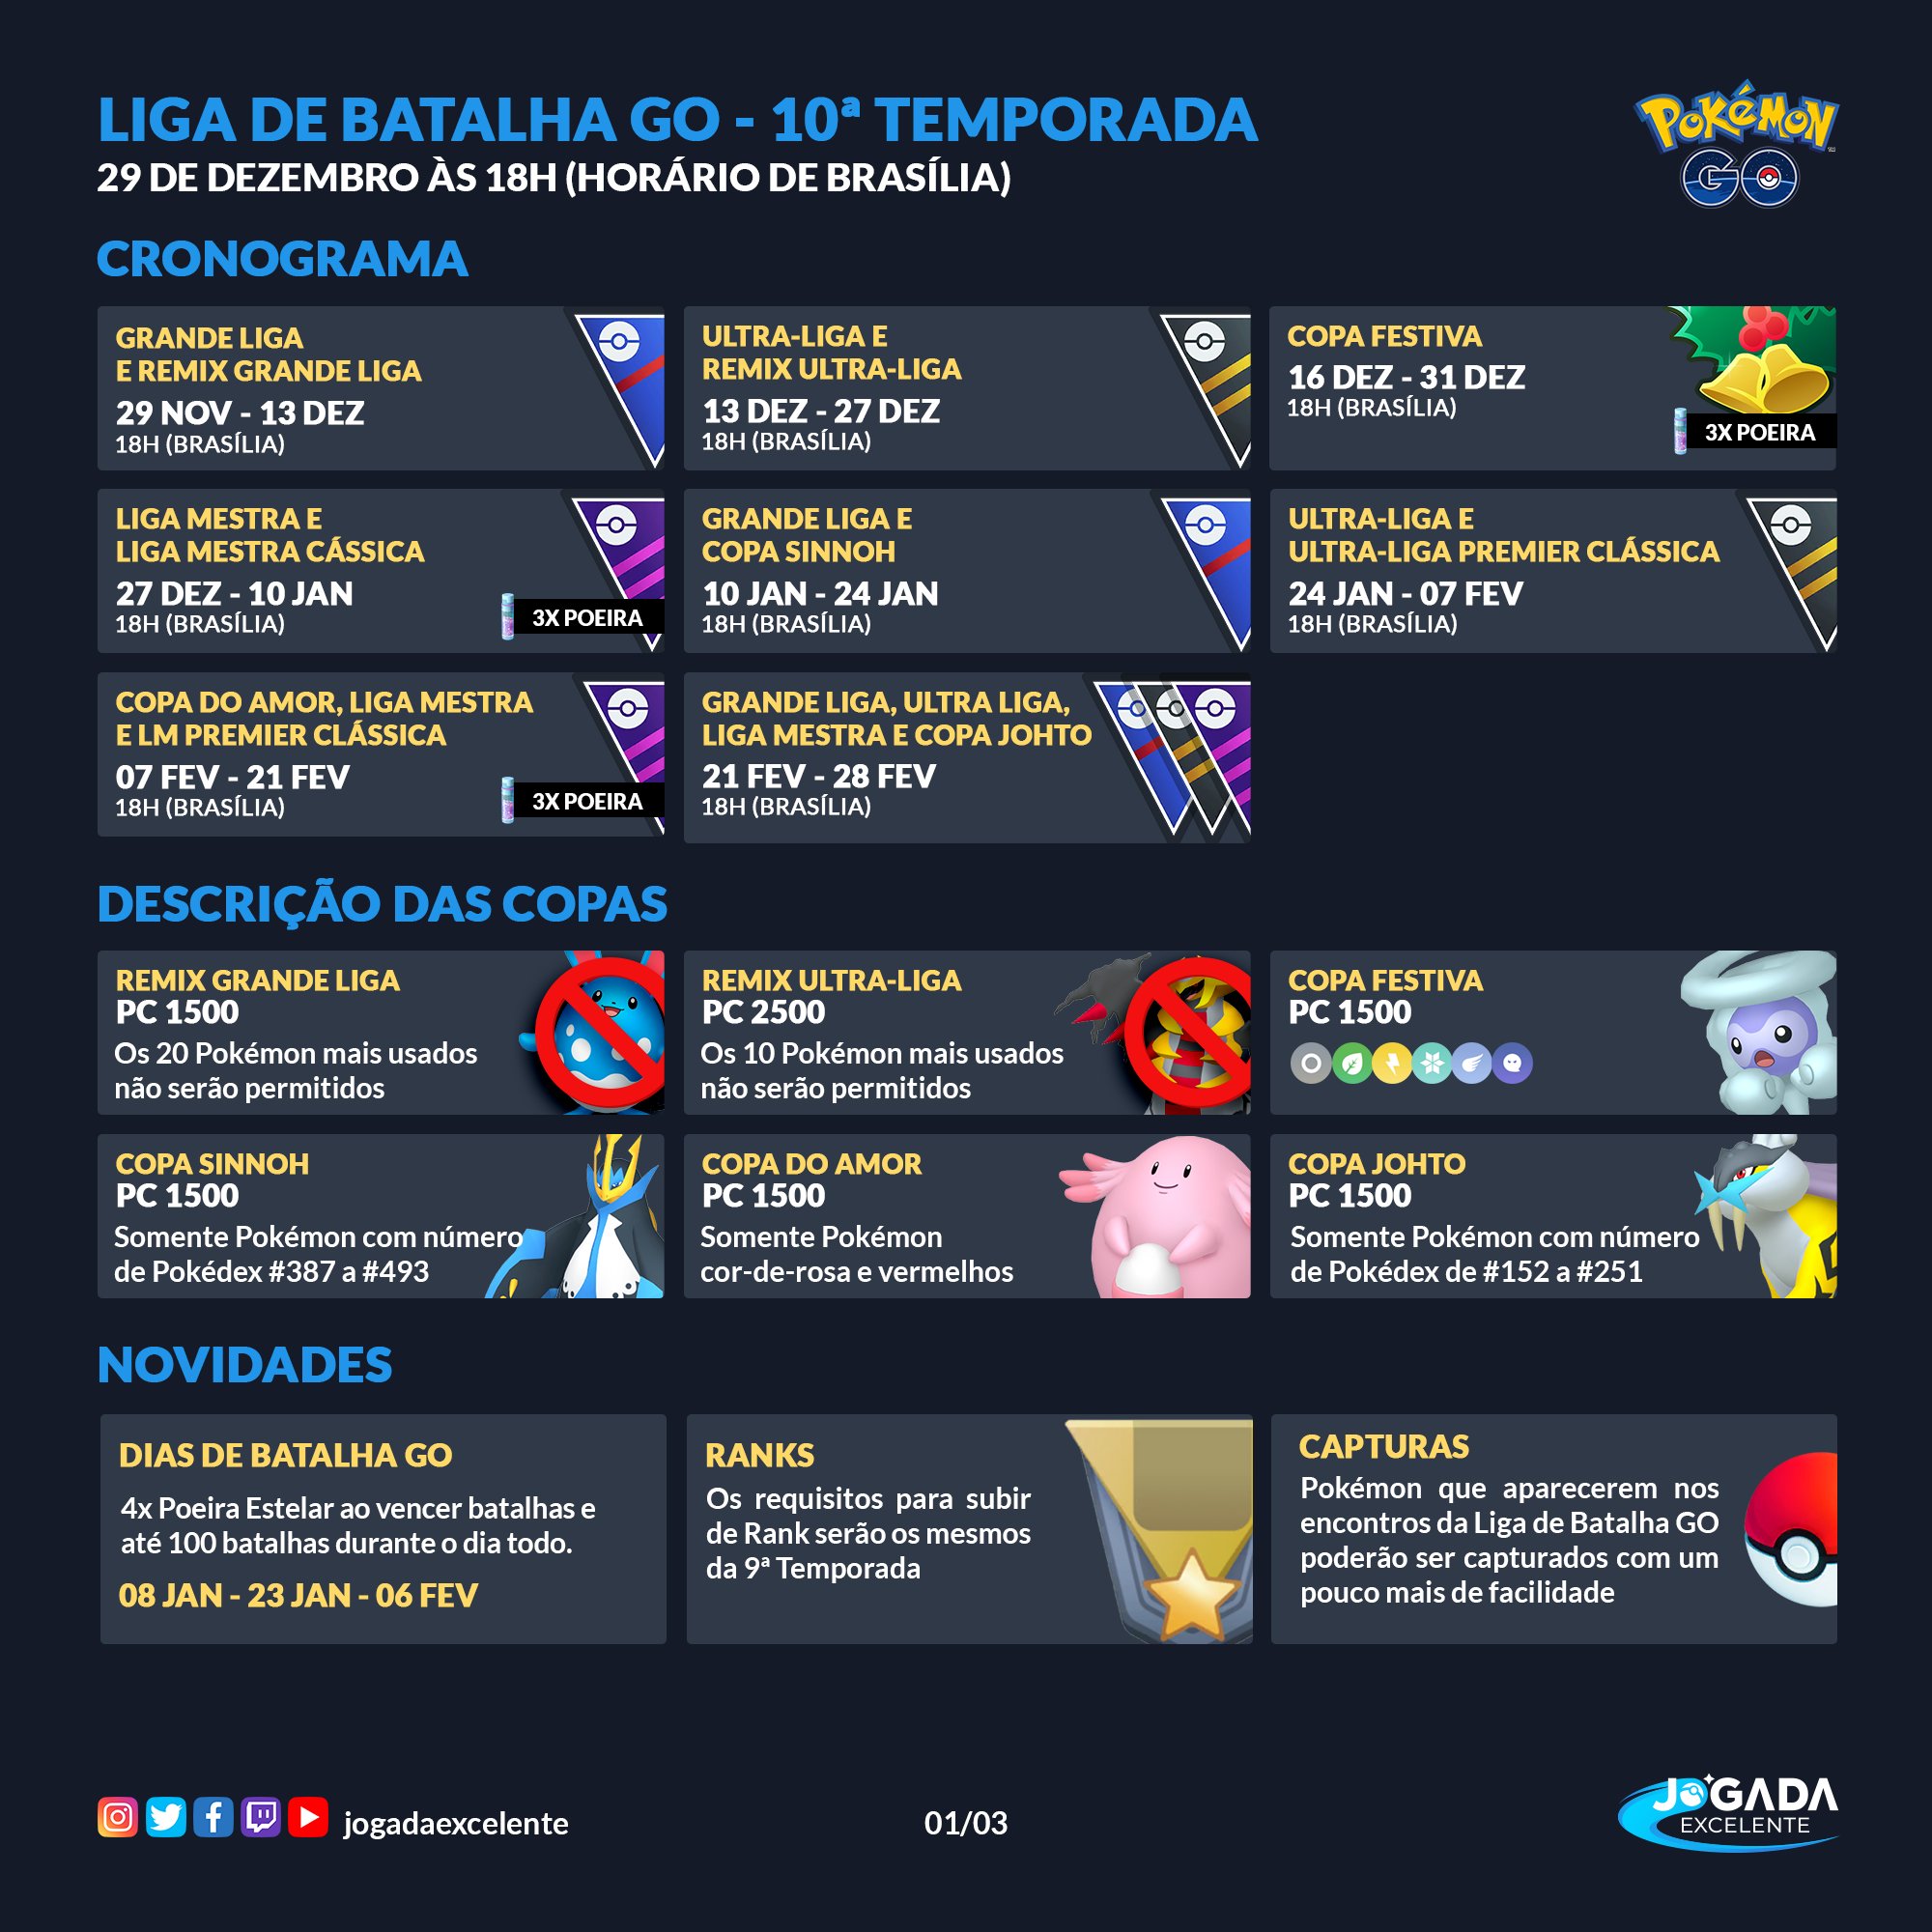 Jogada Excelente on X: Pokémon GO: Detalhes sobre a 10ª Temporada da Liga  de Batalha GO foram revelados. Data: a partir de 29/11 às 18h (horário de  Brasília). Nessa temporada, itens de